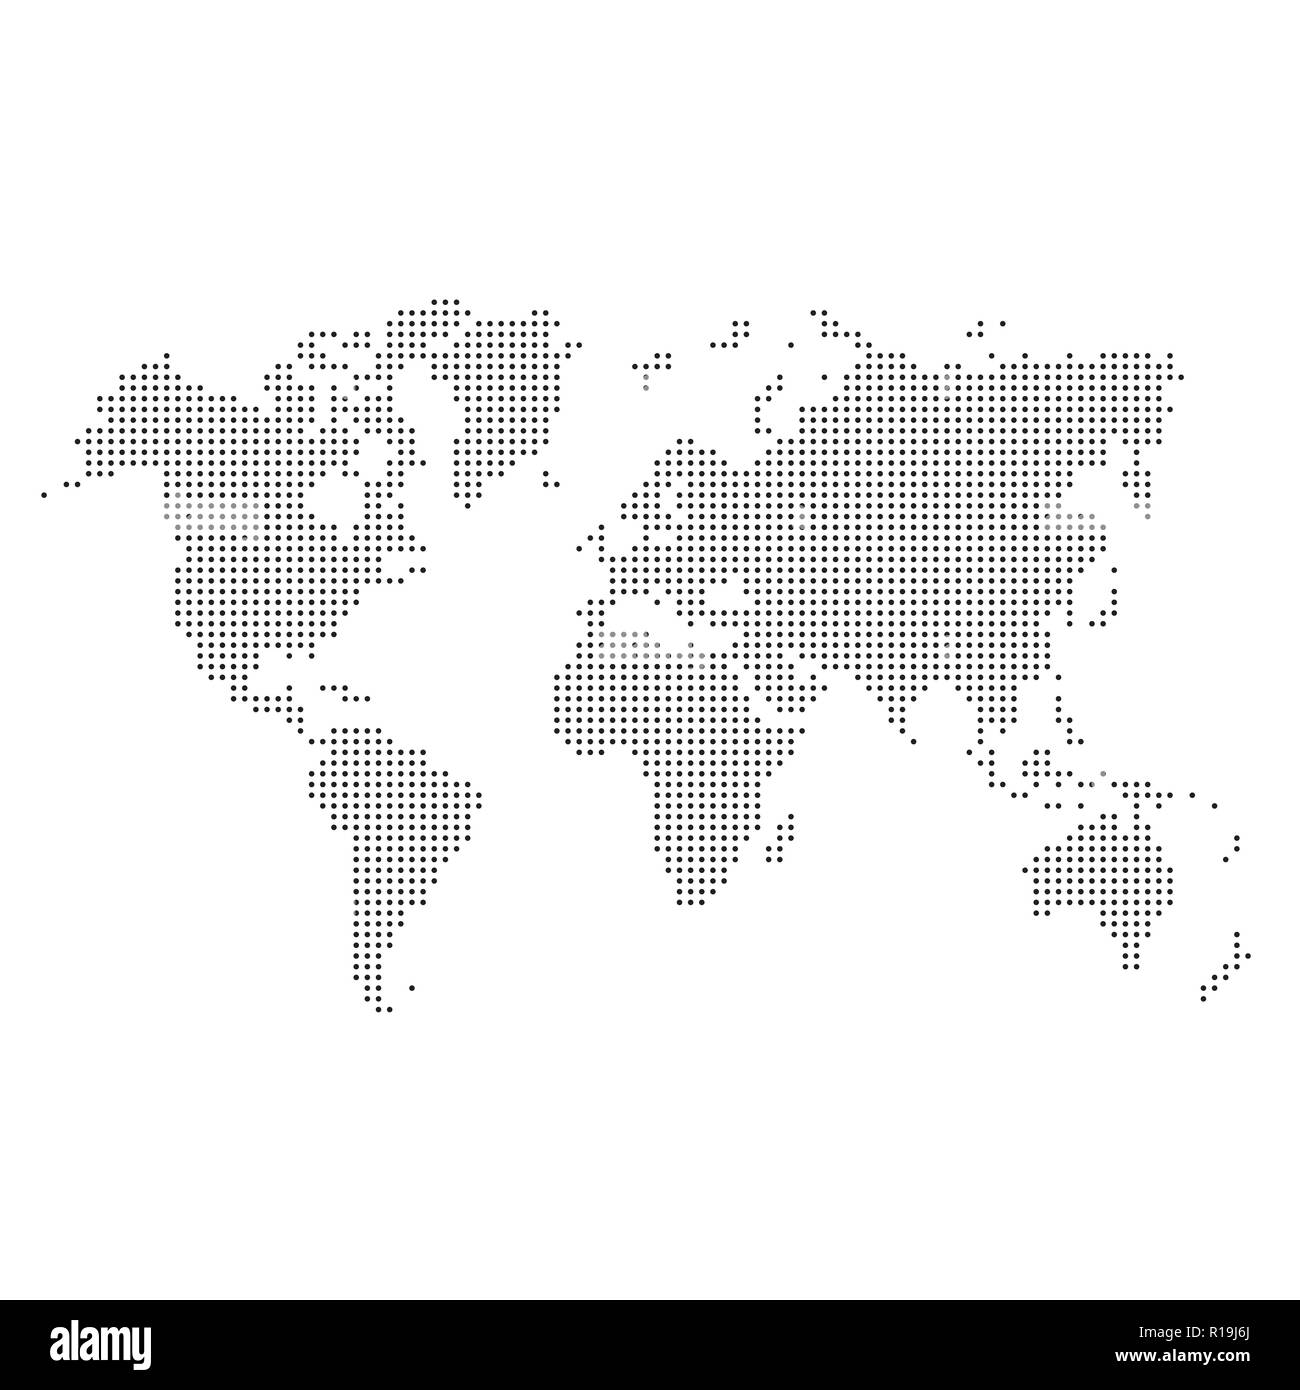 Puntos negros silueta del mapa del mundo aislado sobre fondo blanco. Ilustración del Vector